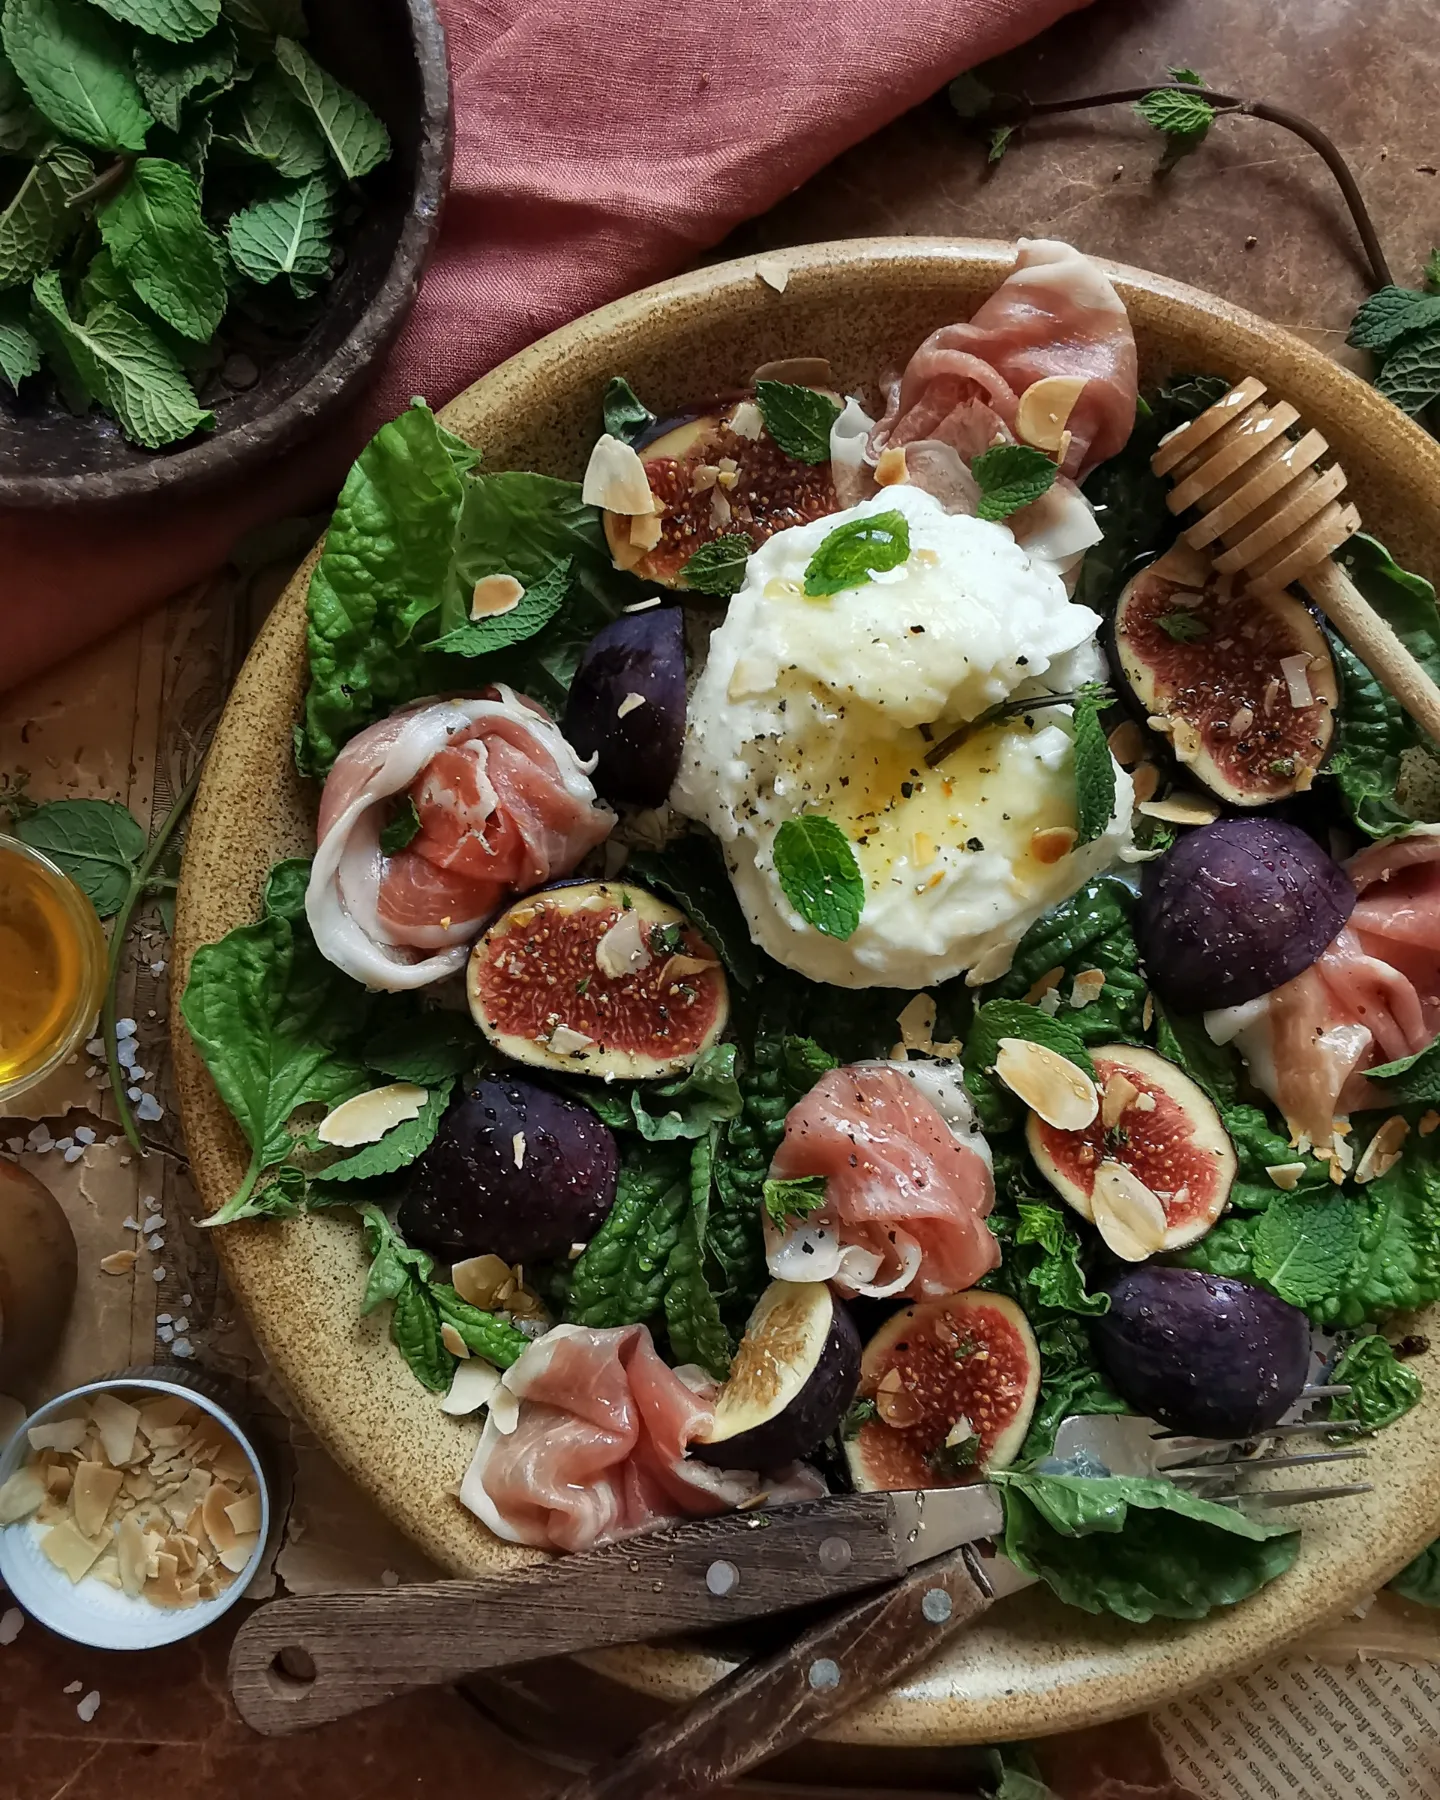 Burrata, figs, prosciutto, basil salad